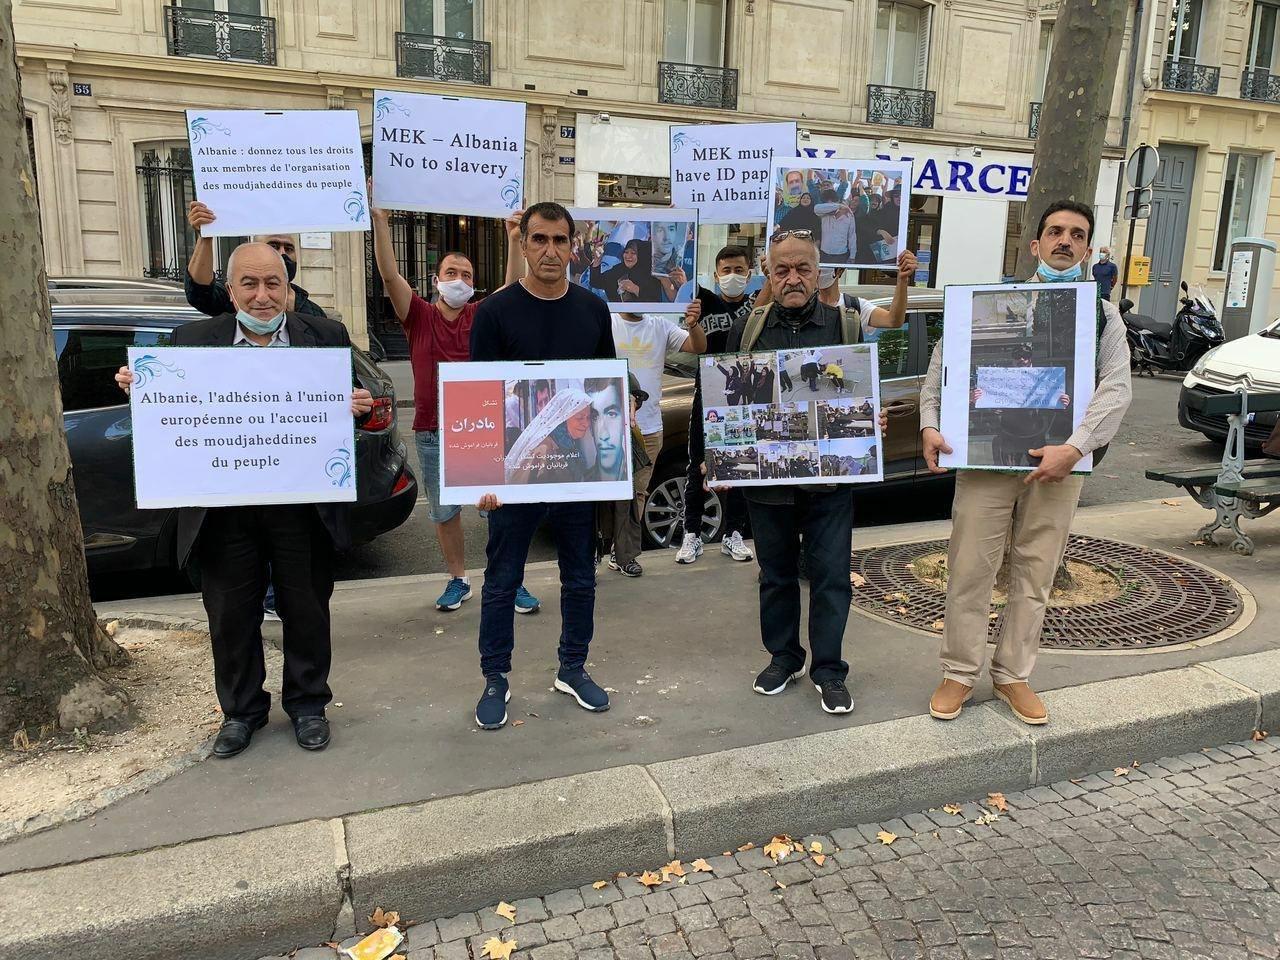 جداشده های فرقه رجوی مقابل سفارت آلبانی در پاریس تجمع اعتراضی برگزار کردند / فرقه رجوی حدود ۴۰ سال است جلوی دیدار خانواده‌ها با فرزندان دربندشان را گرفته است